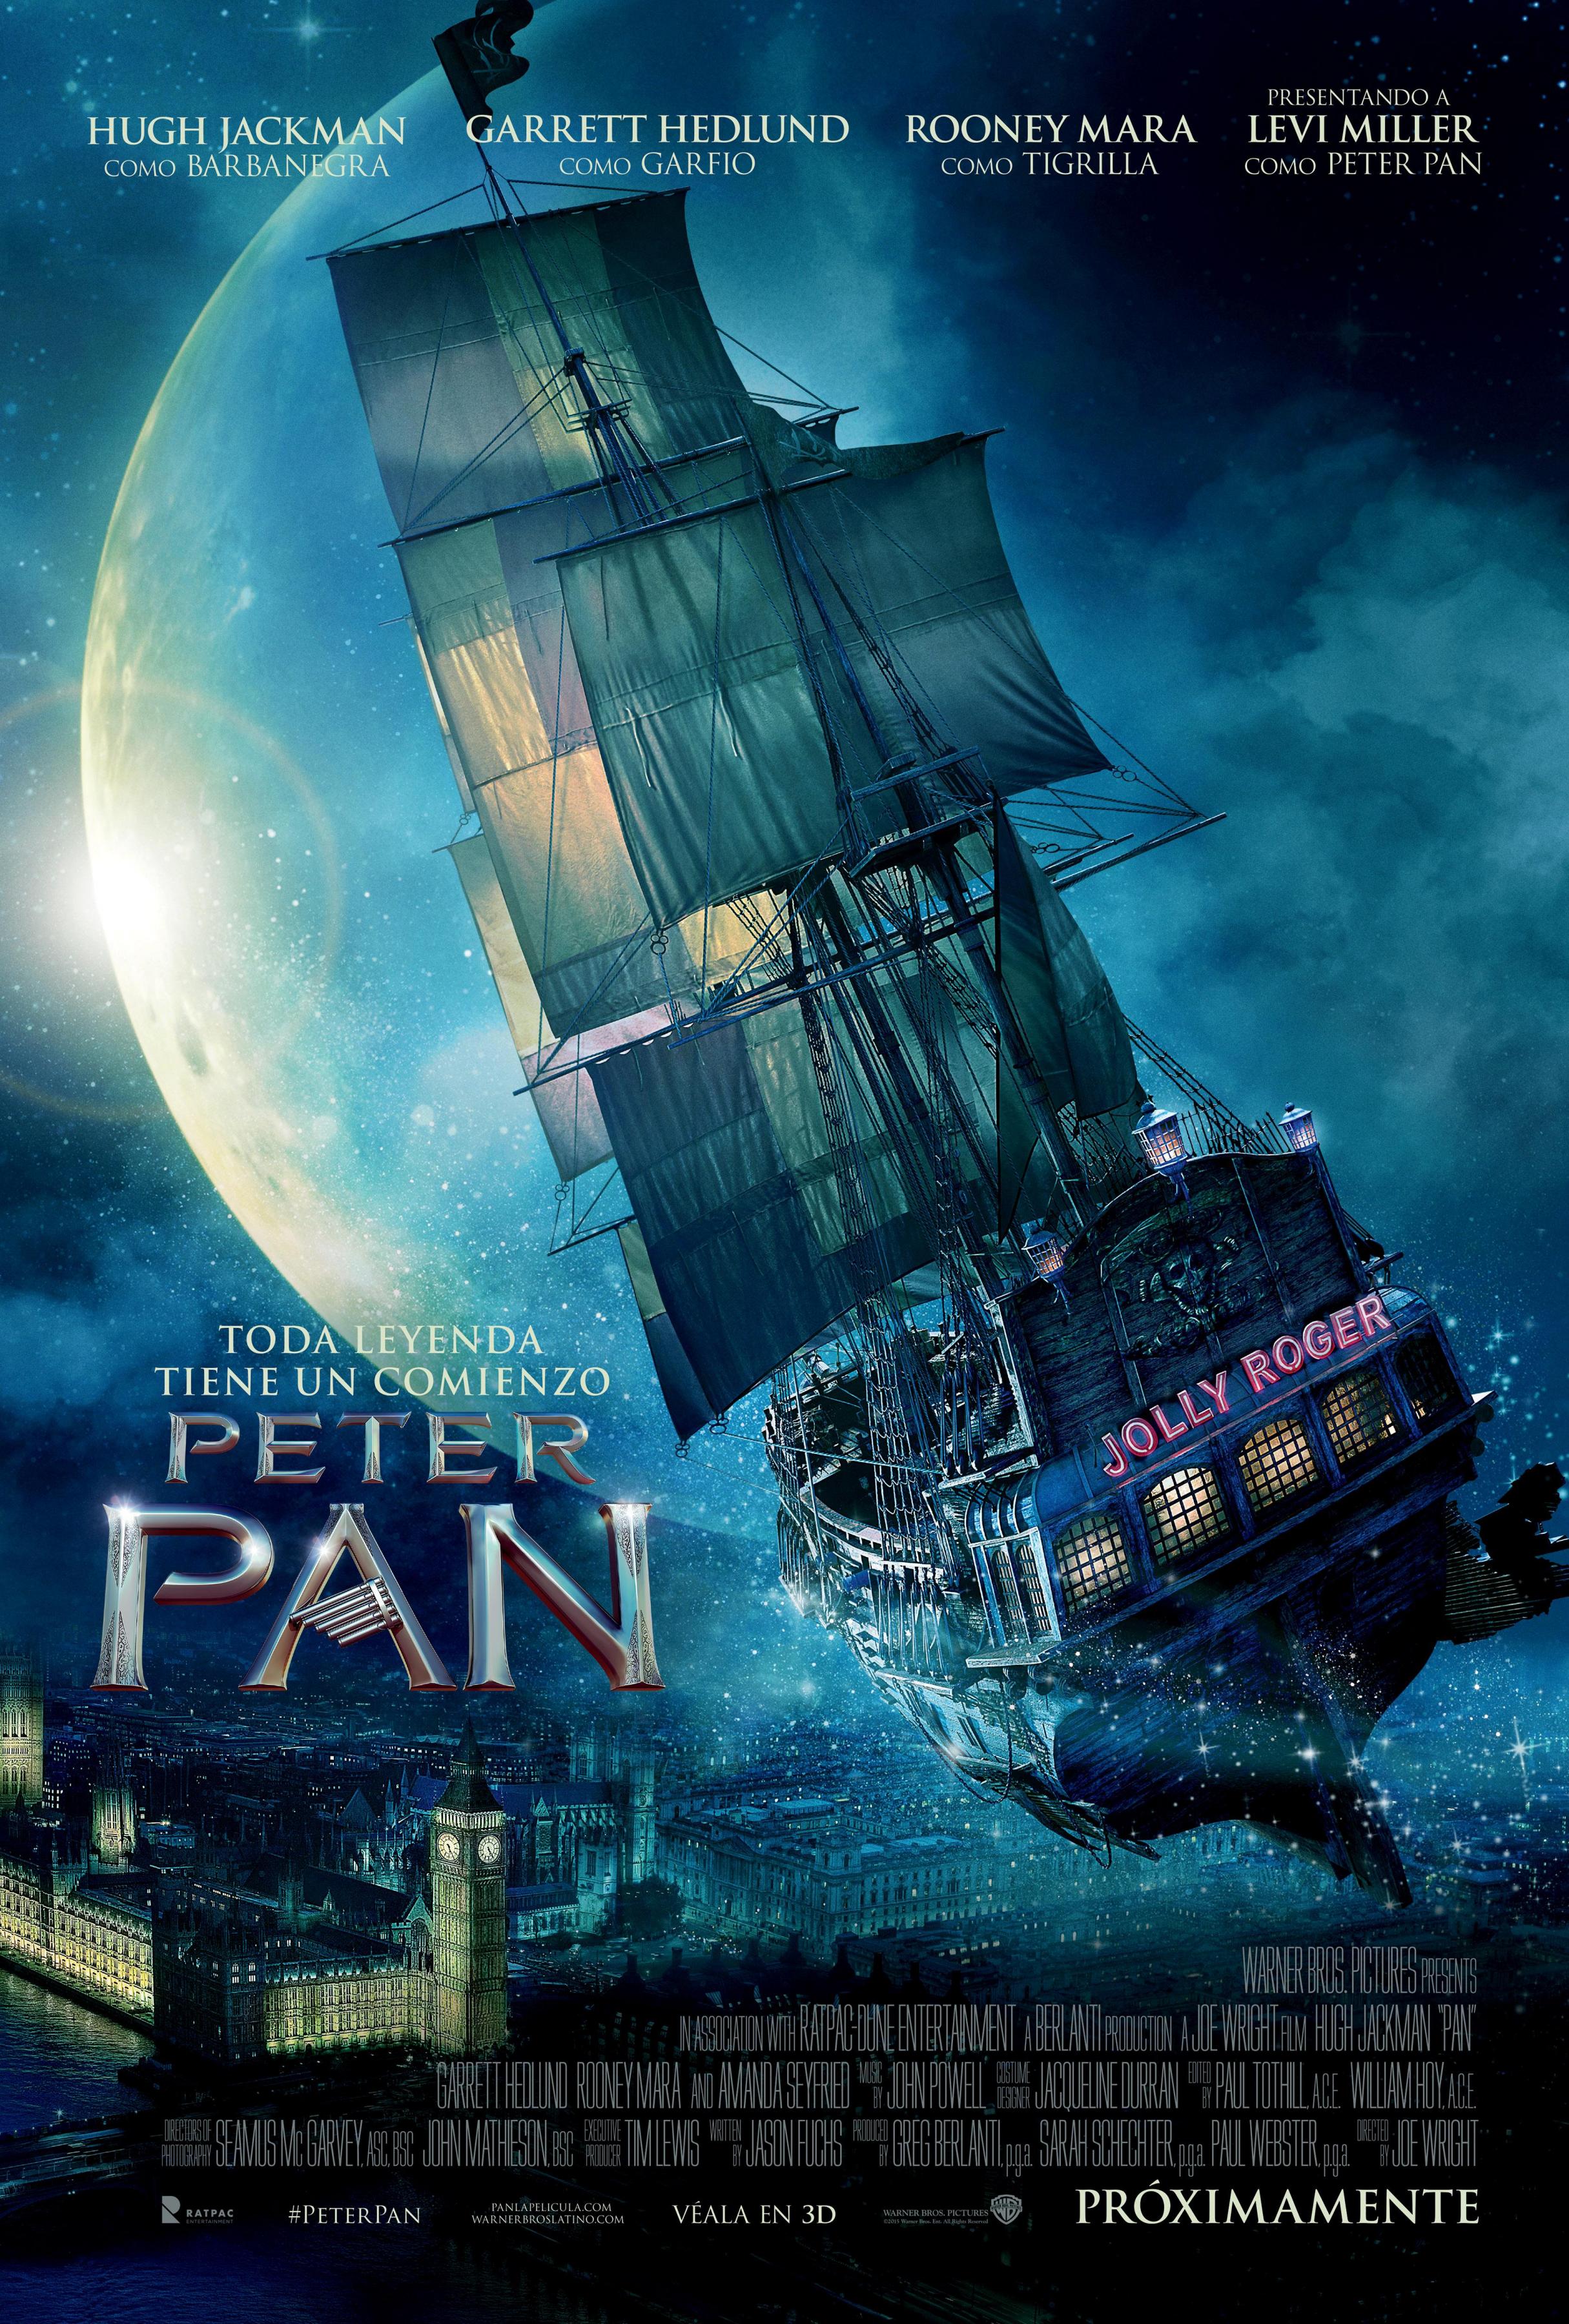 Постер фильма Пэн: Путешествие в Нетландию | Pan